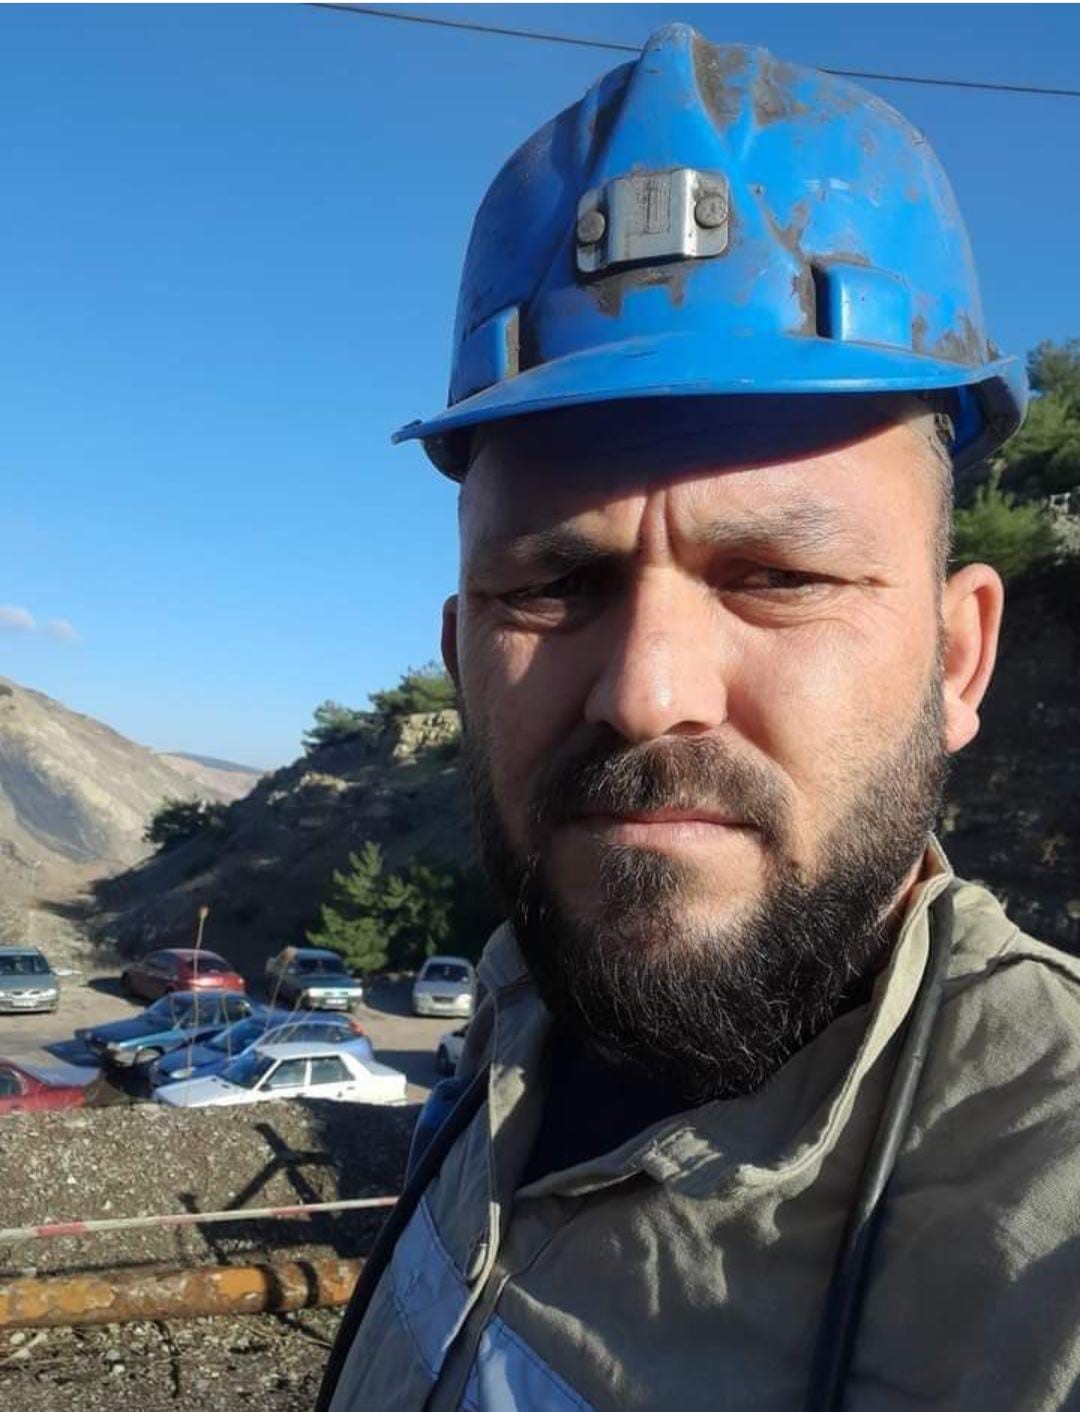 Soma’da maden ocağında iş kazası: 1 ölü
